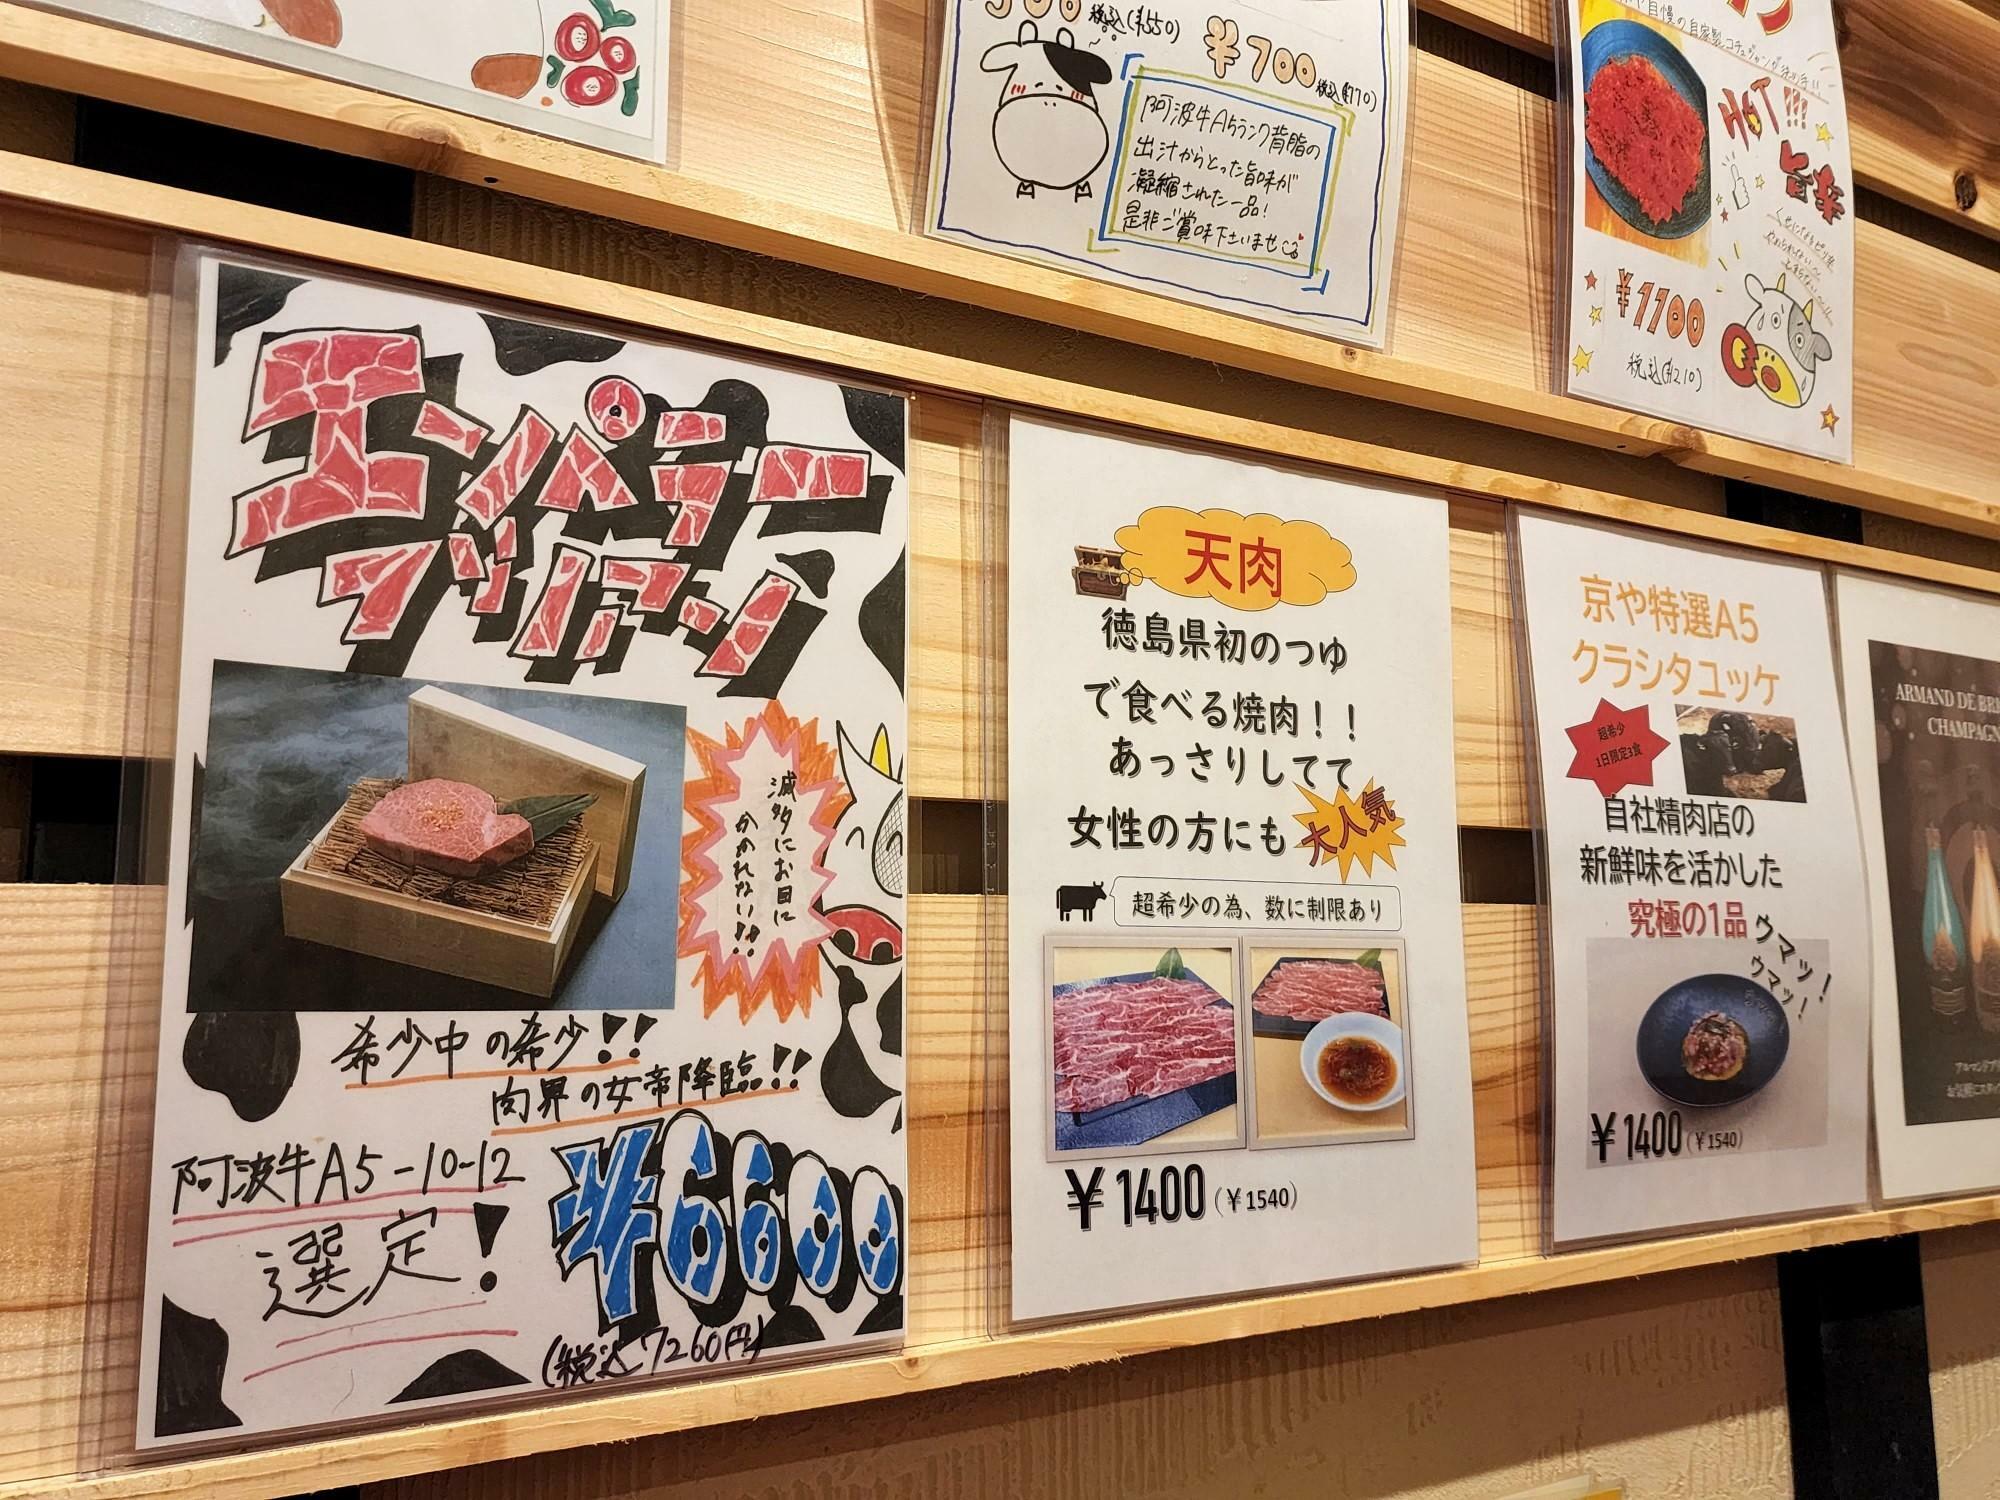 「焼肉dining京や 本店」店内の掲示物。